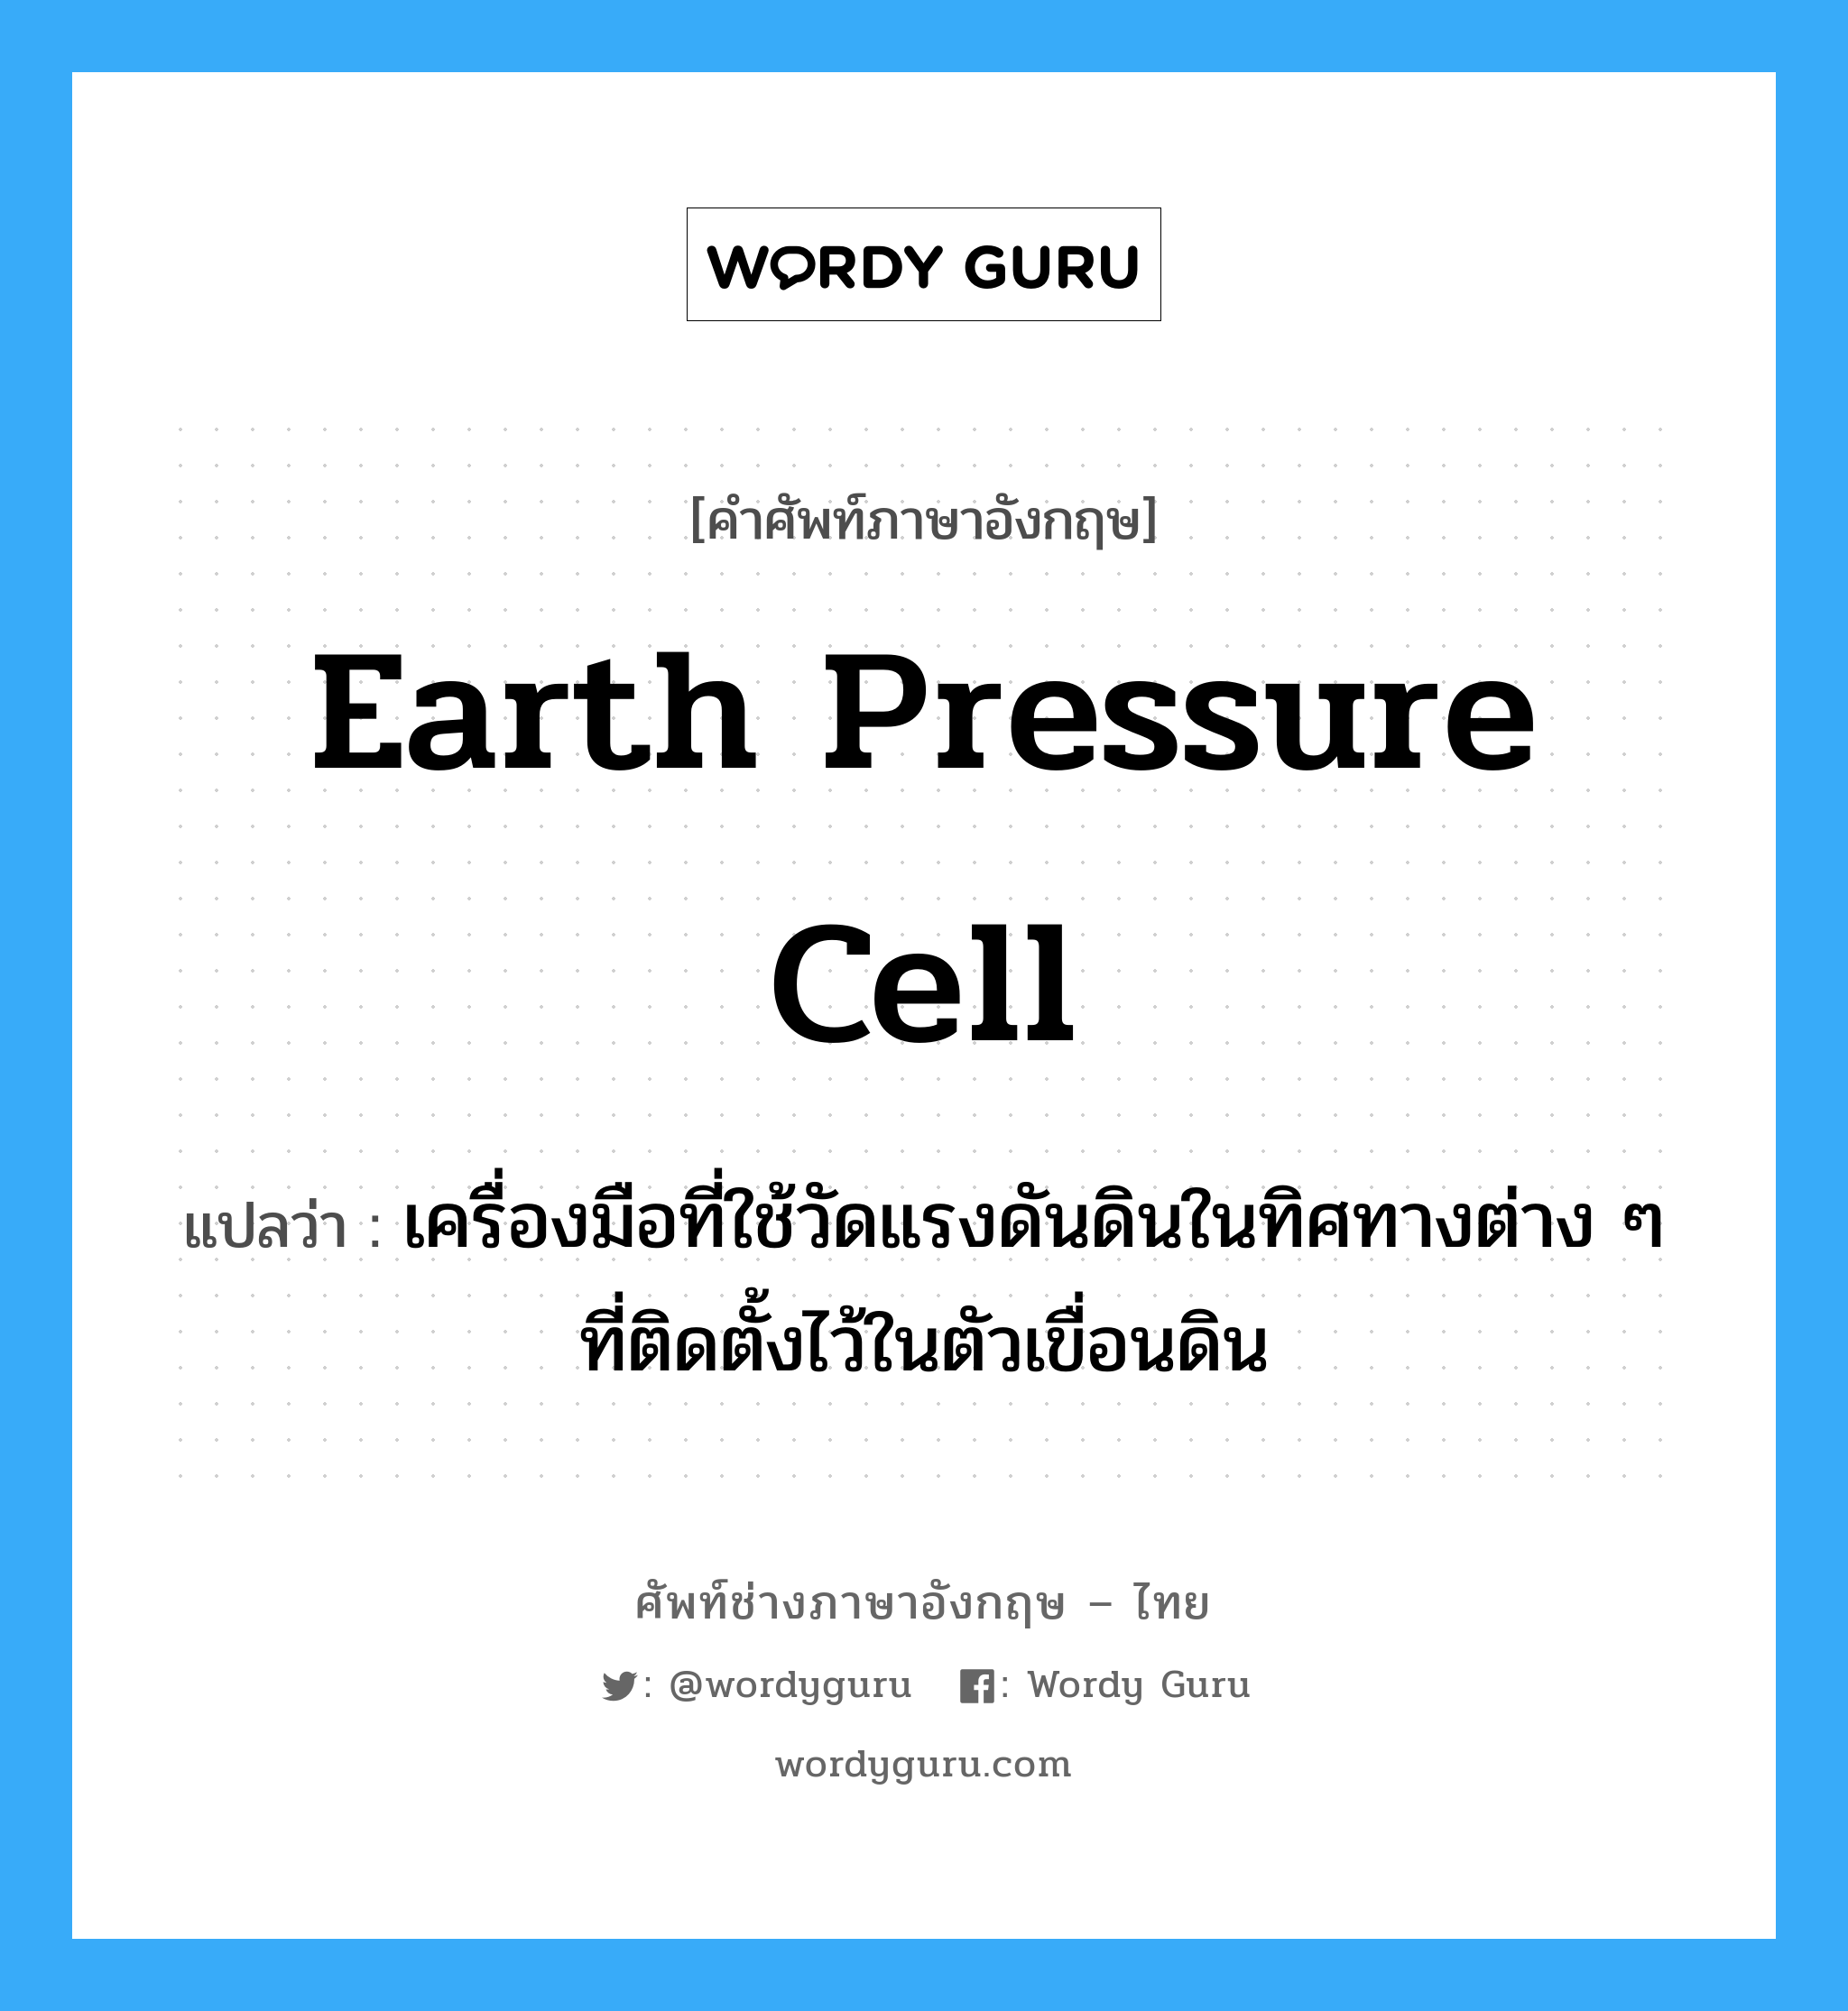 earth pressure cell แปลว่า?, คำศัพท์ช่างภาษาอังกฤษ - ไทย earth pressure cell คำศัพท์ภาษาอังกฤษ earth pressure cell แปลว่า เครื่องมือที่ใช้วัดแรงดันดินในทิศทางต่าง ๆ ที่ติดตั้งไว้ในตัวเขื่อนดิน